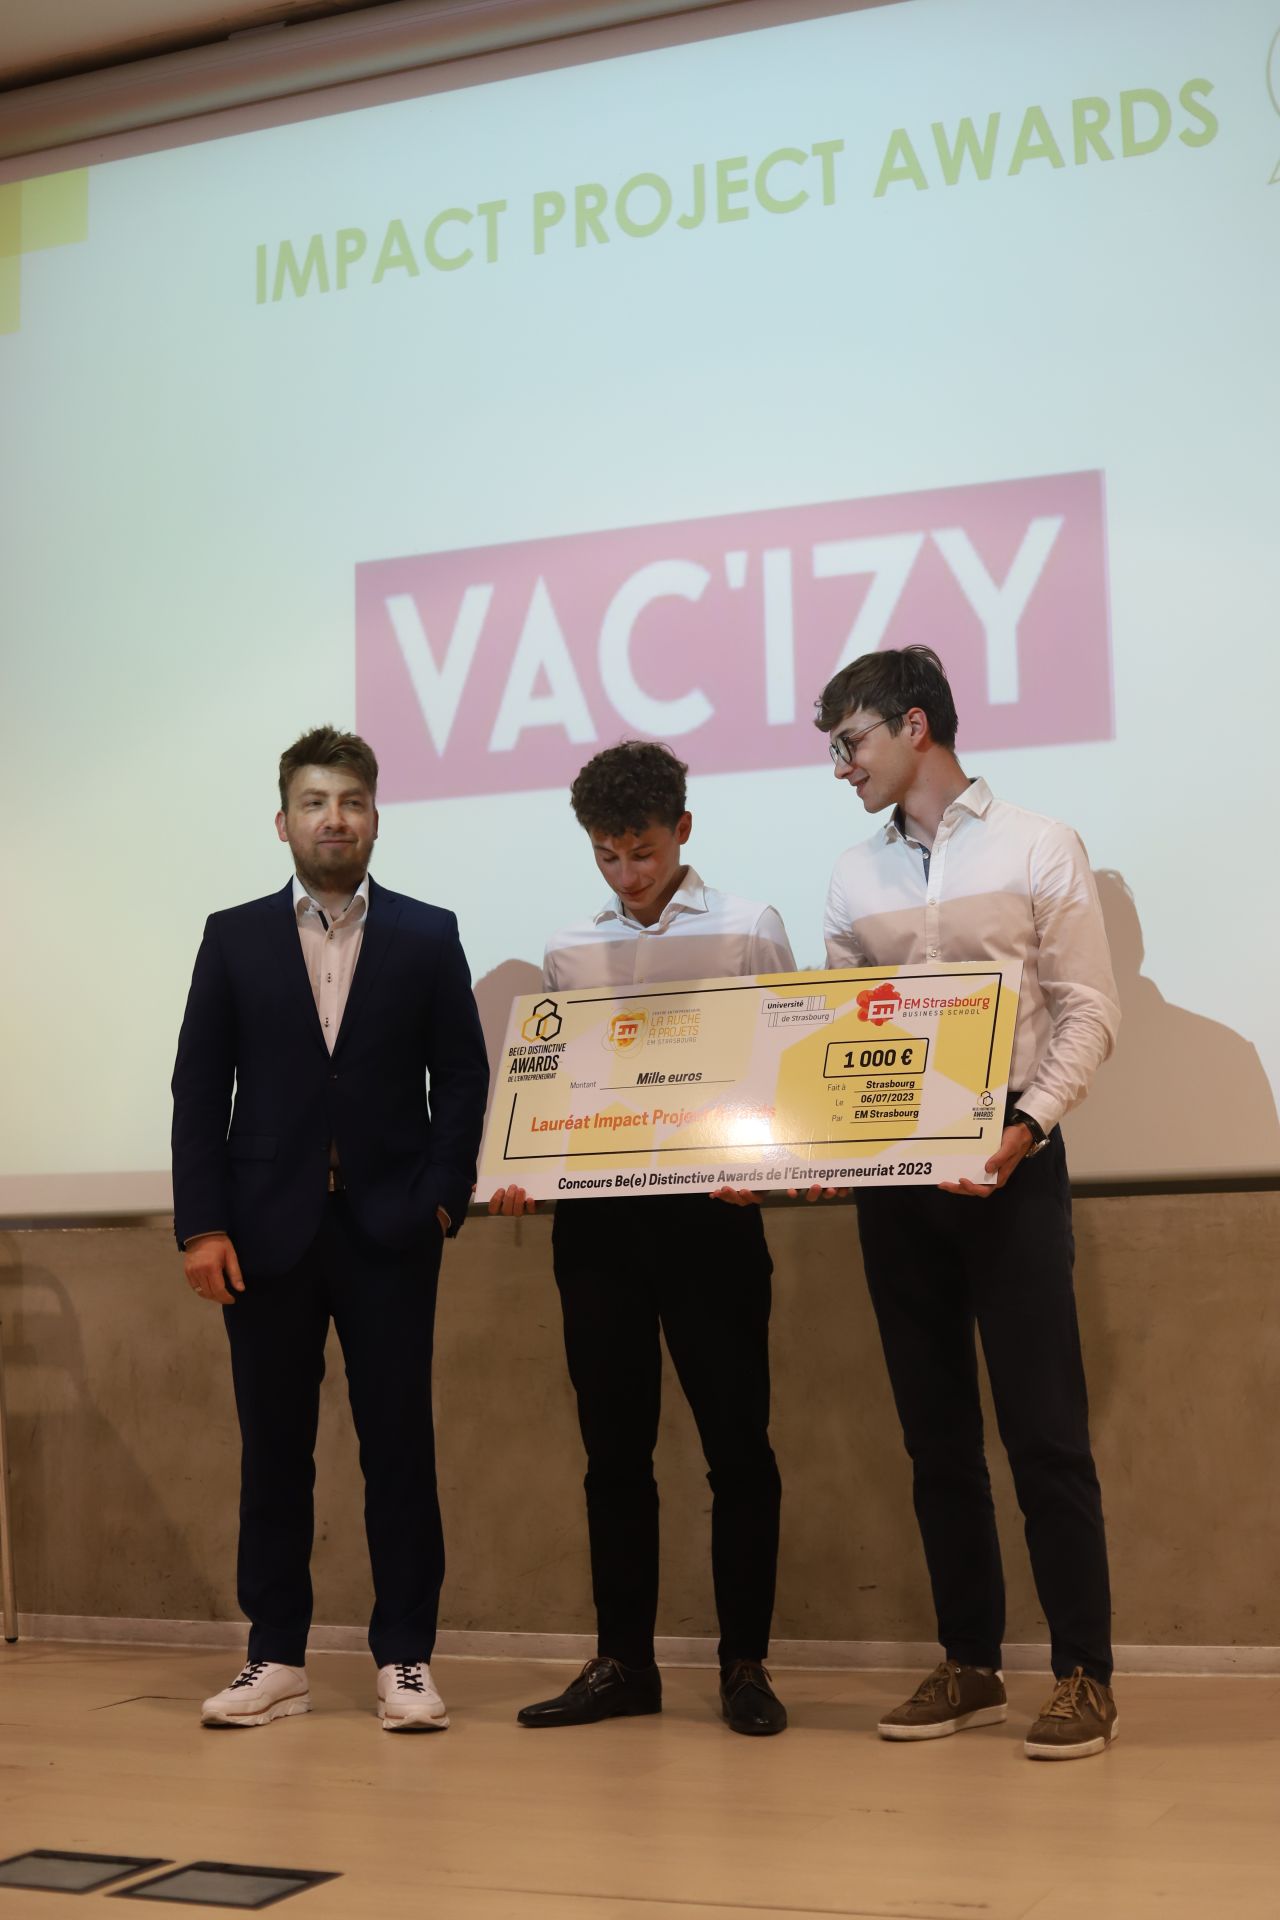 Impact Project Award - Vac'Izy